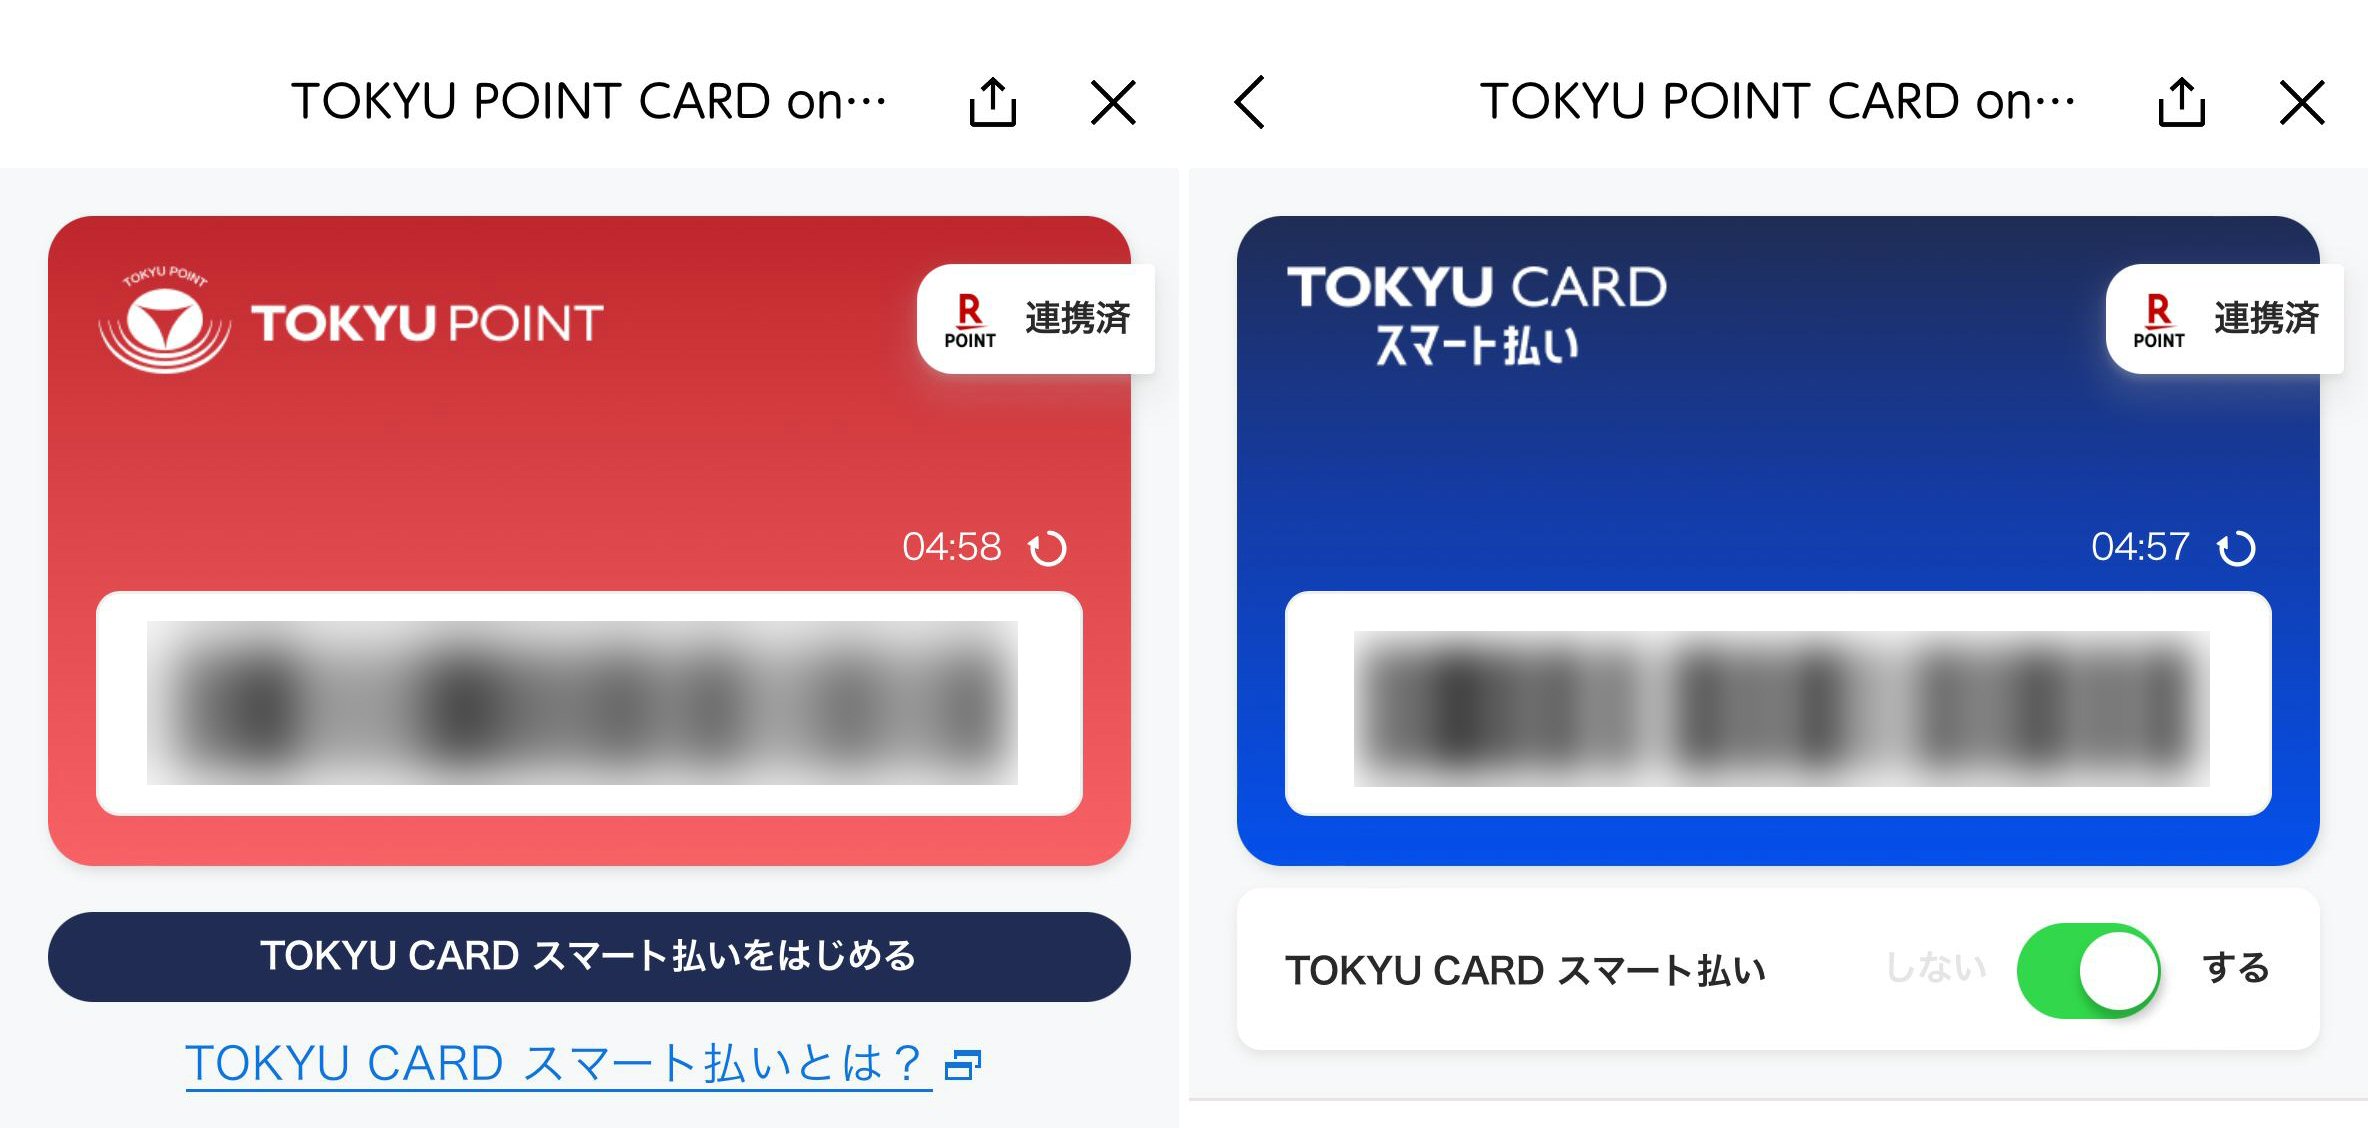 青い画面が「TOKYU CARDスマート払い」